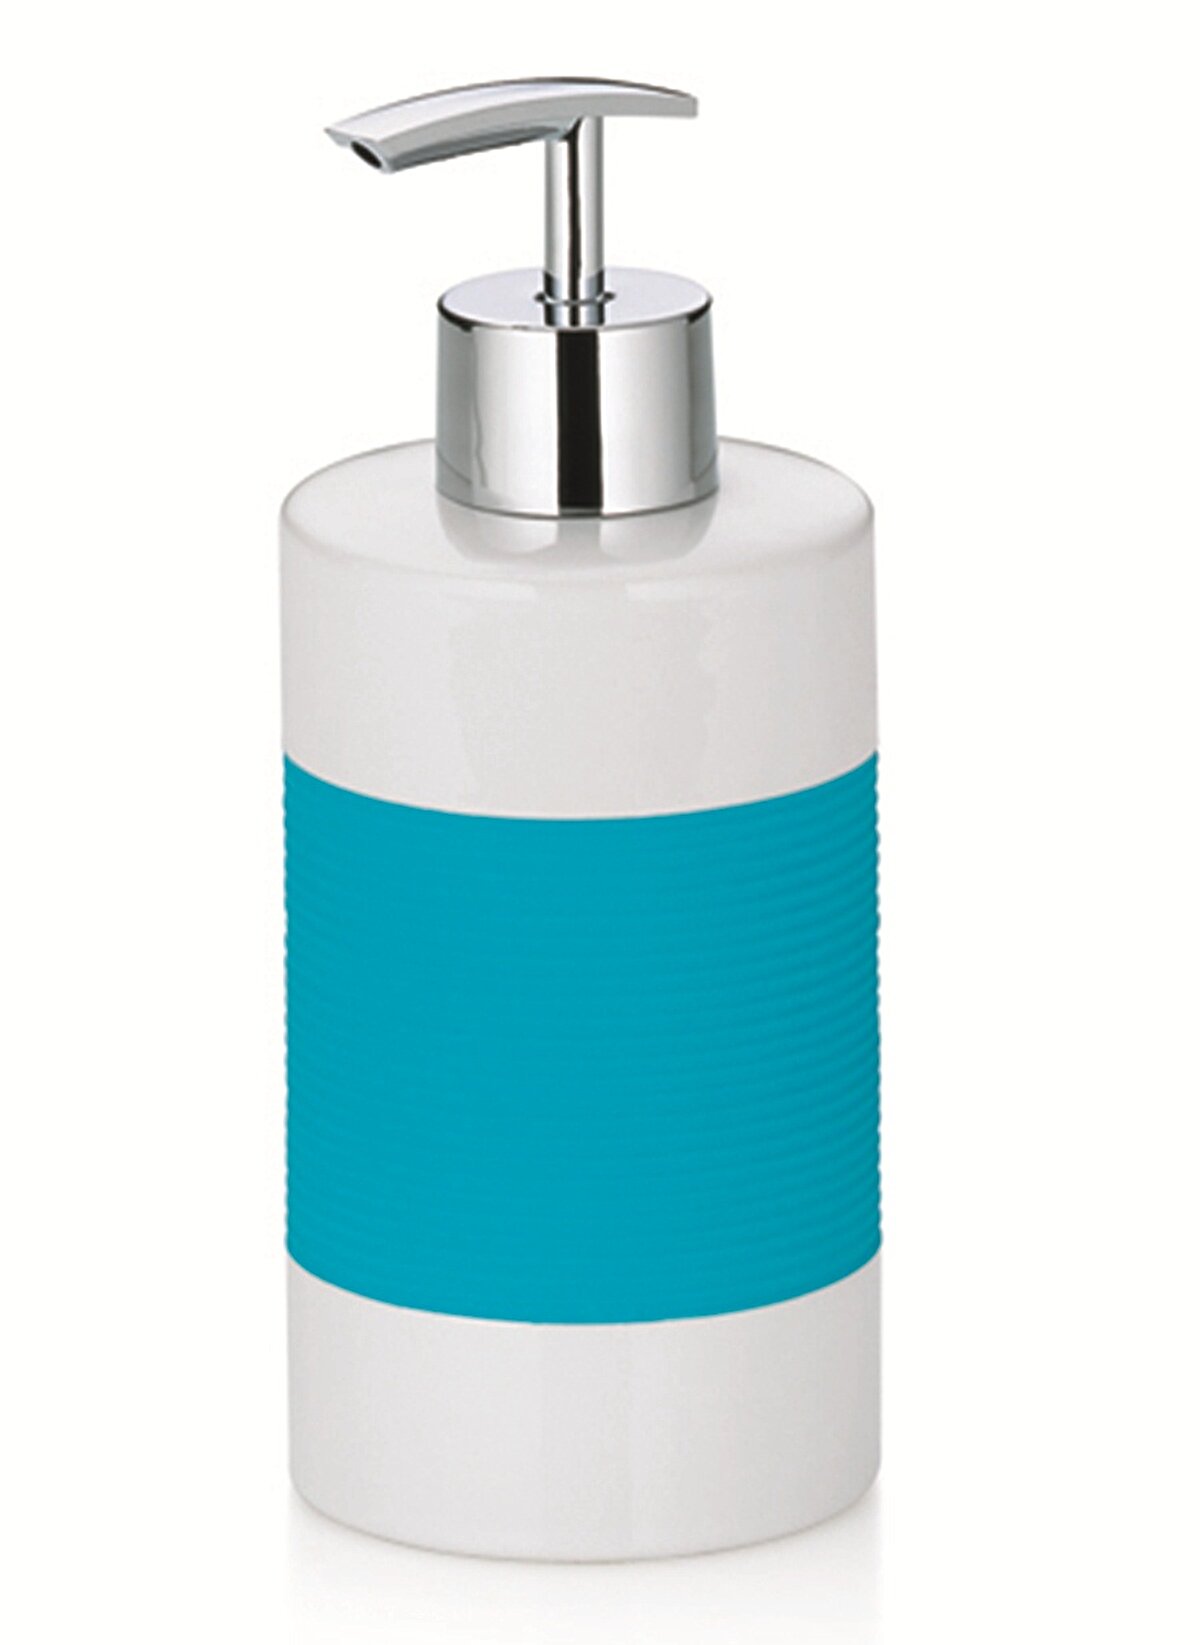 22567 Liquid soap dispenser Laletta turquoise Ceramic rubber groove decor white/turqoise 7cm  , 17c